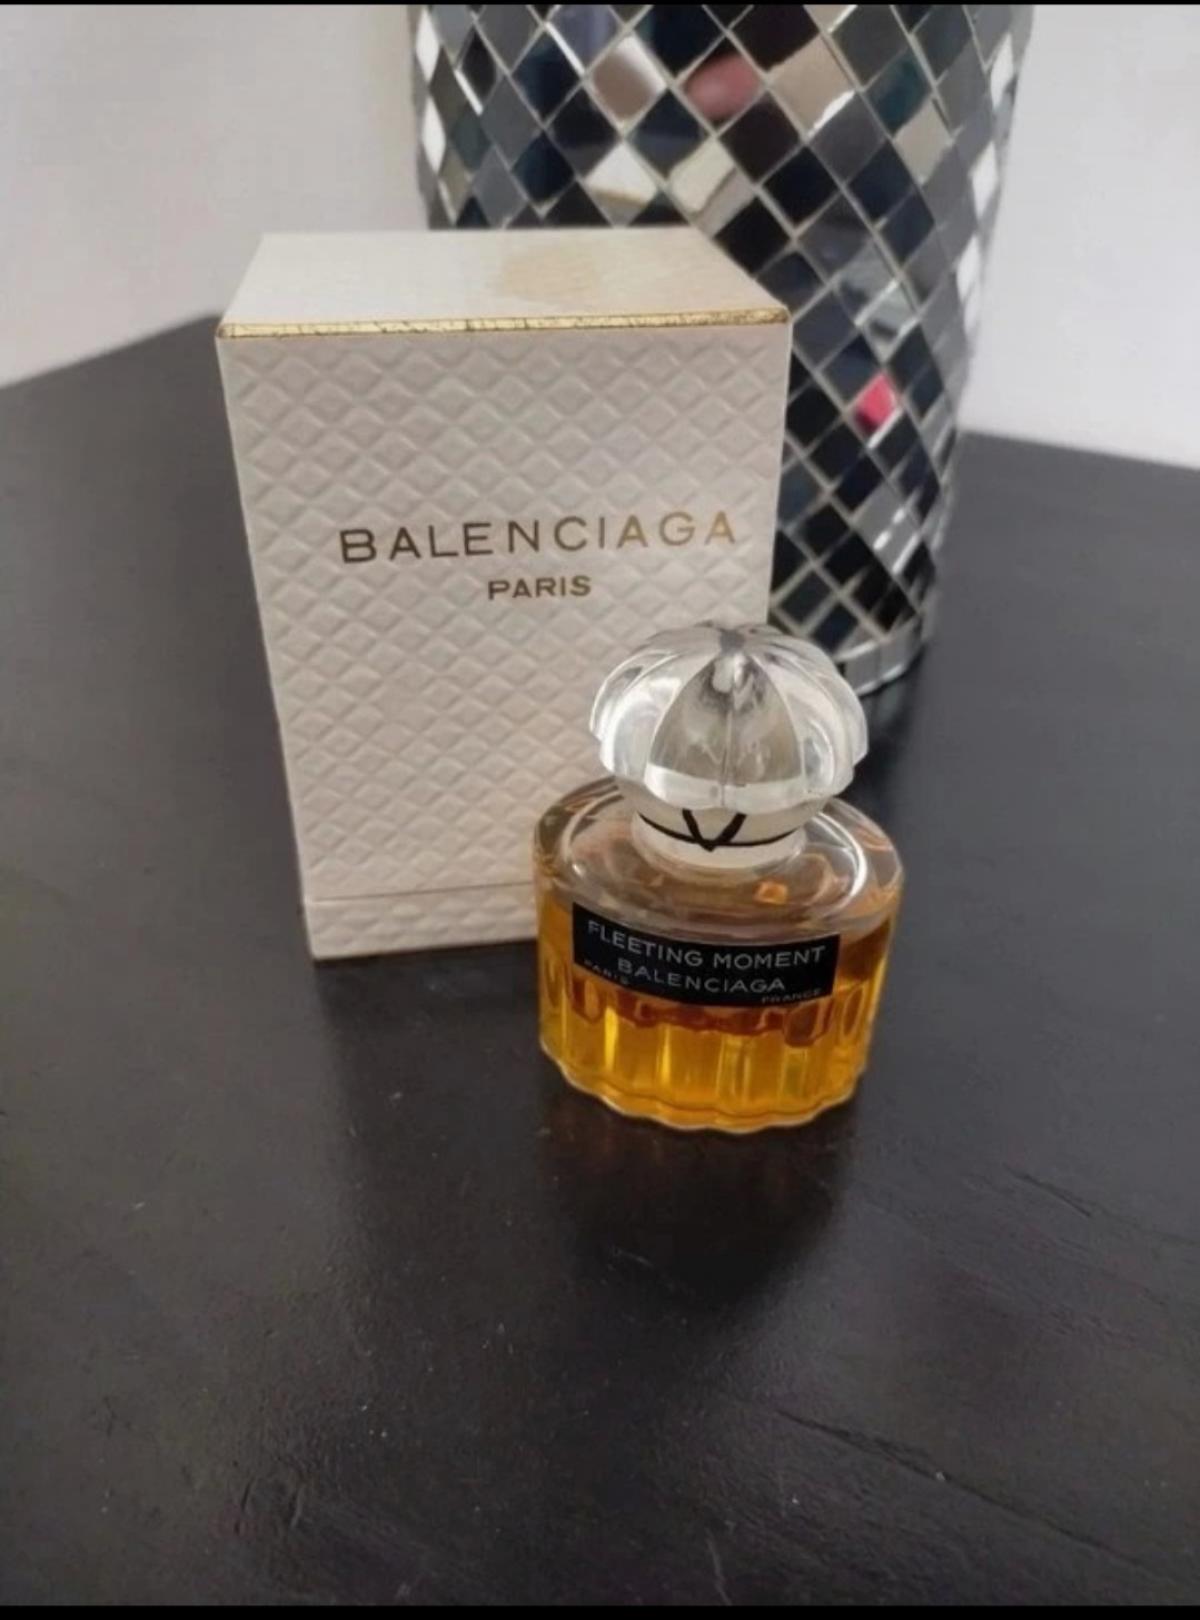 La Fuite des Heures (Fleeting Moment) Balenciaga perfume - a fragrance ...